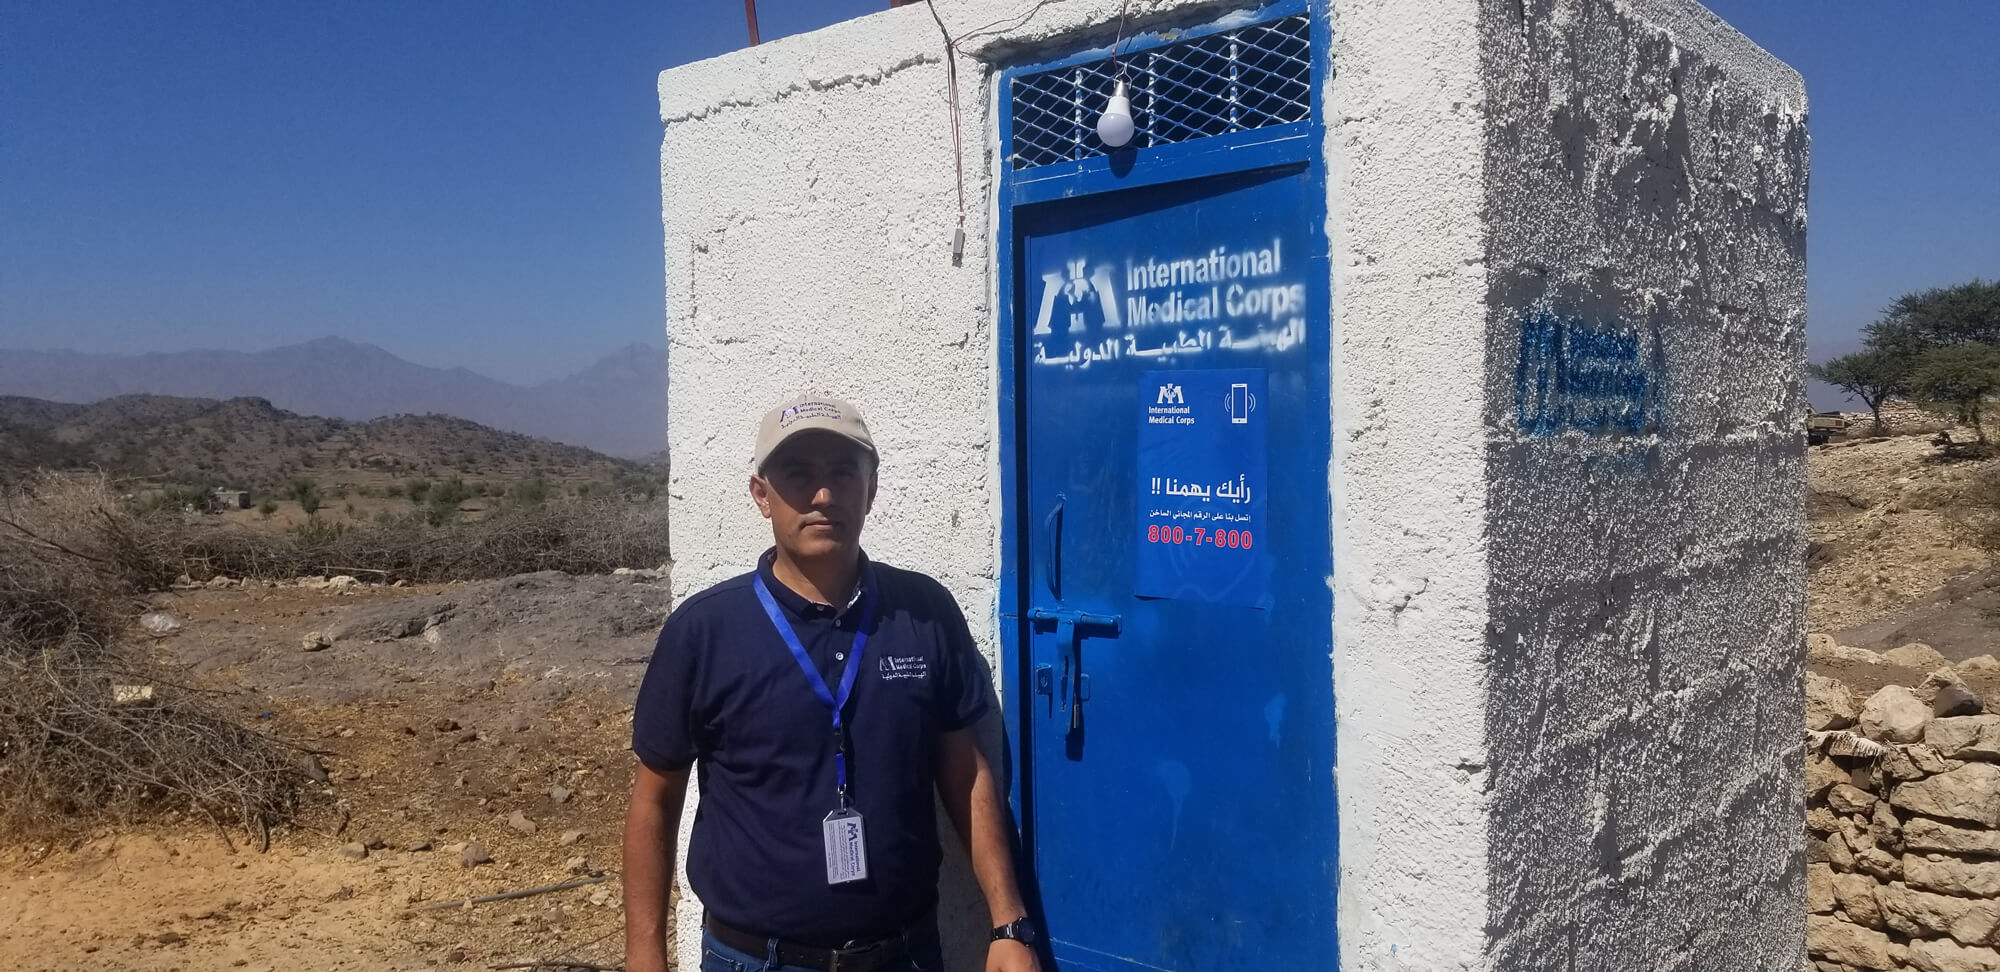 Dr. Esmail Al-Sabahi, Senior Hygiene Promotion Officer, coordinated efforts to build community toilets in Al Ahad village.